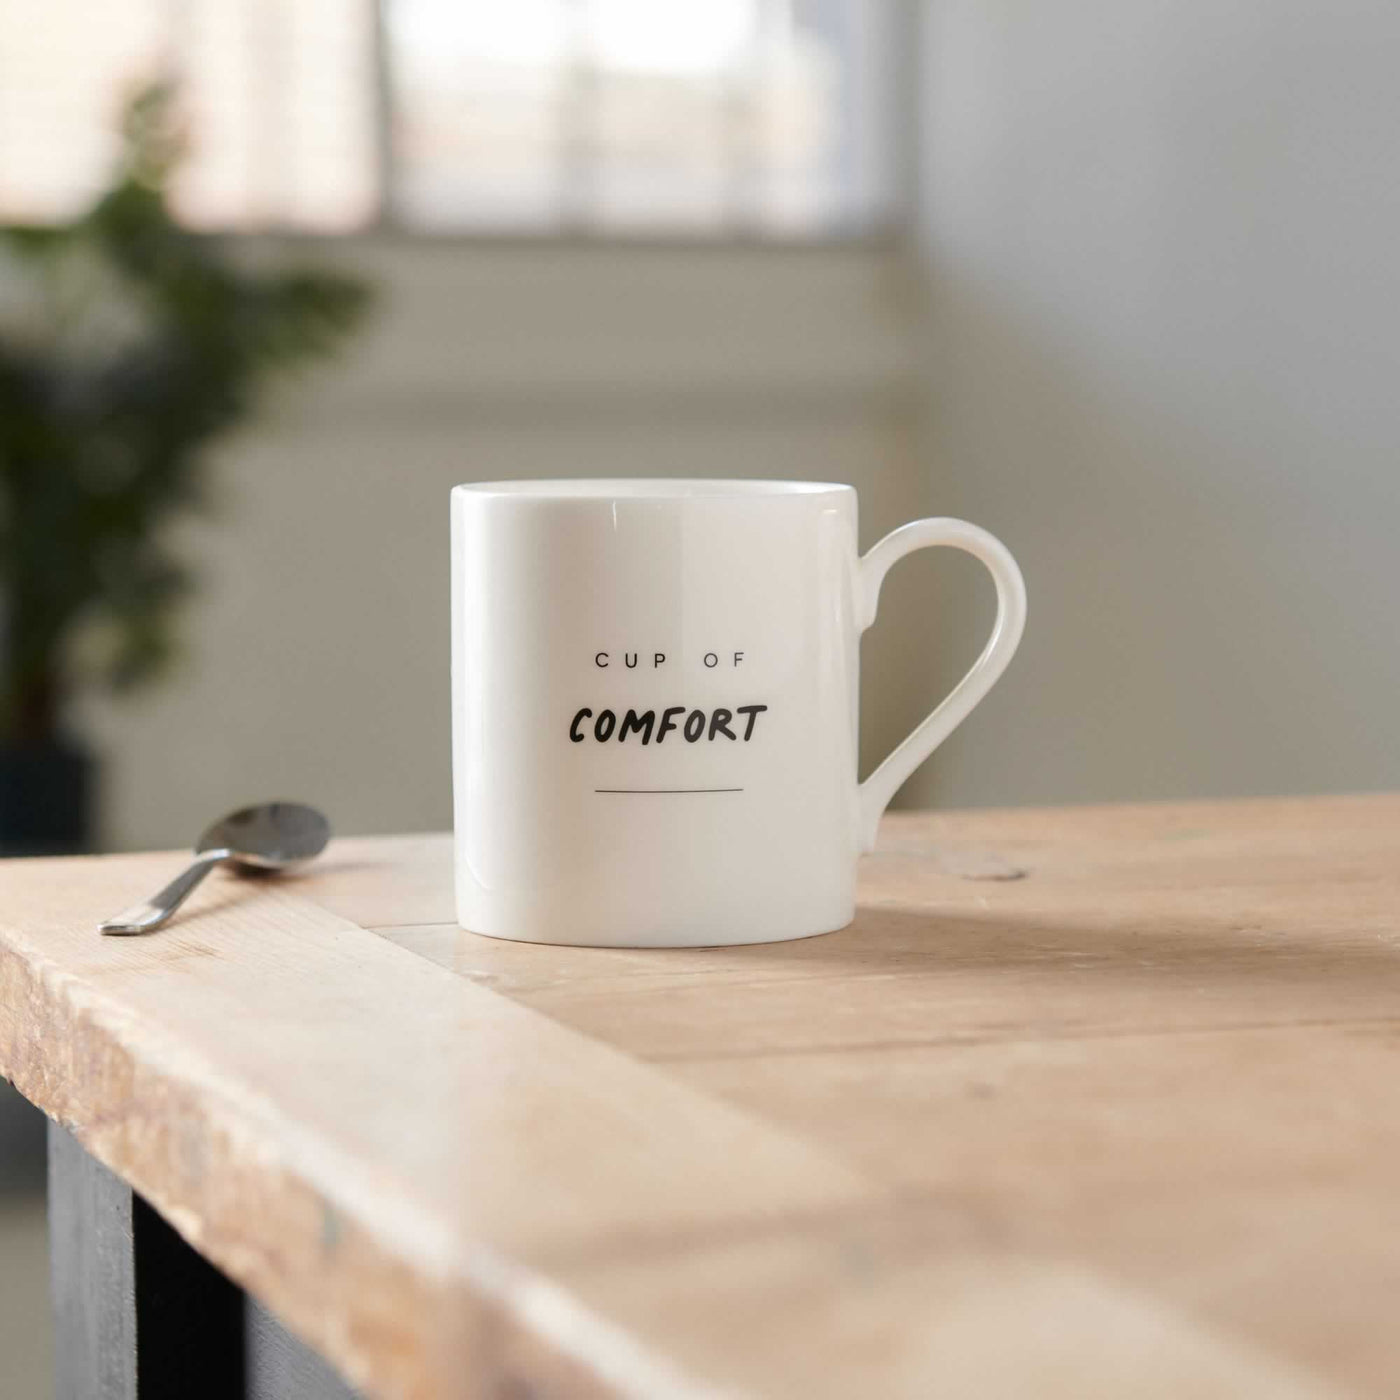 Cup of Comfort Mug on table